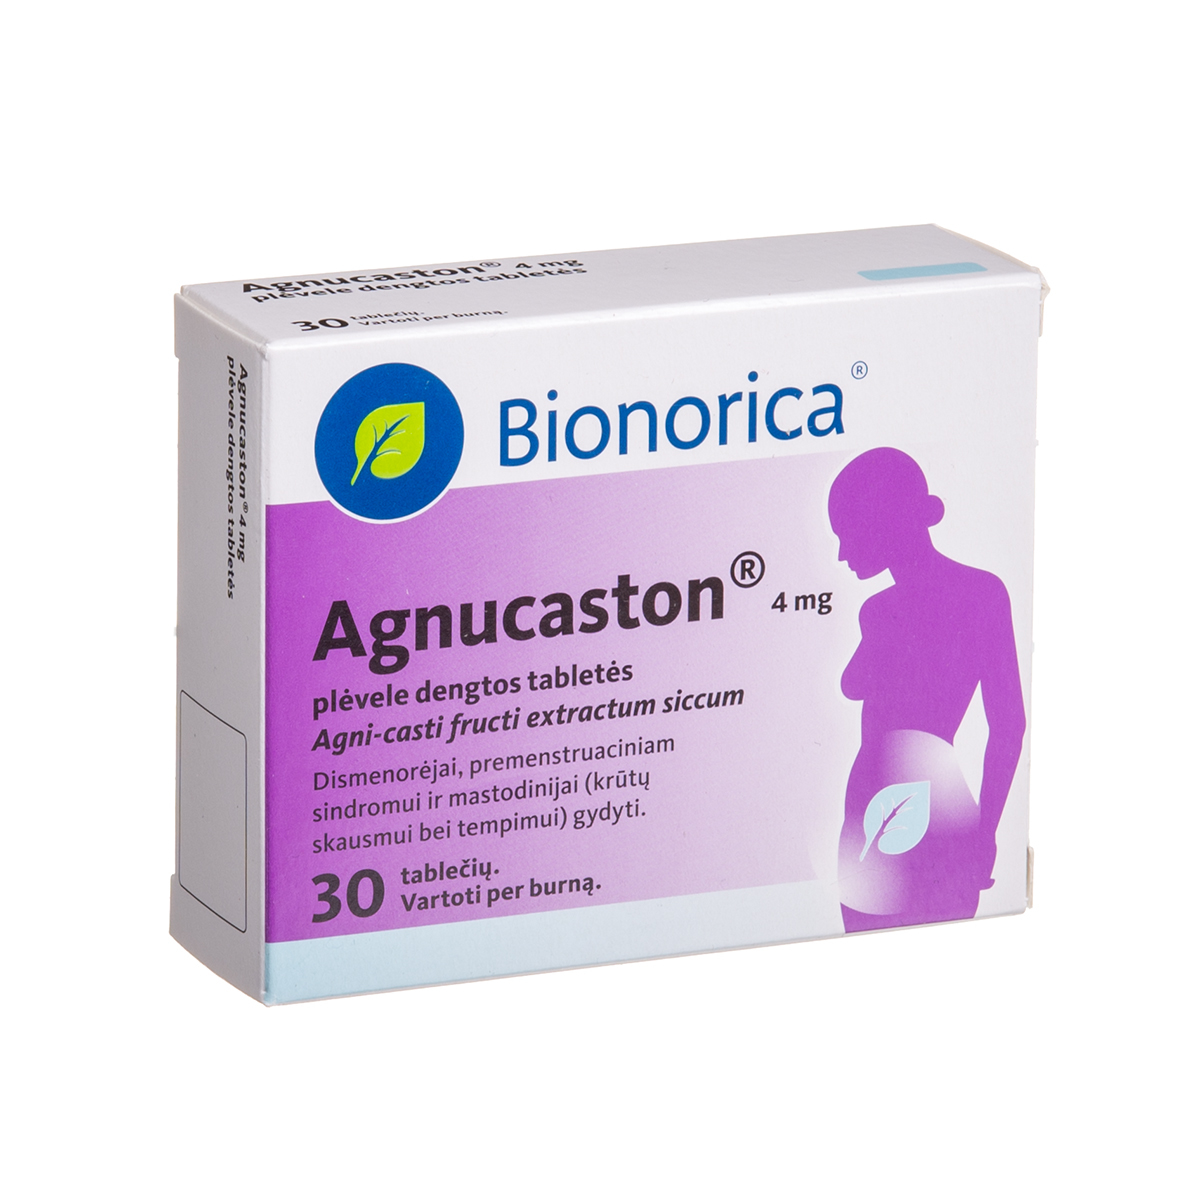 AGNUCASTON, 4 mg, plėvele dengtos tabletės, N30